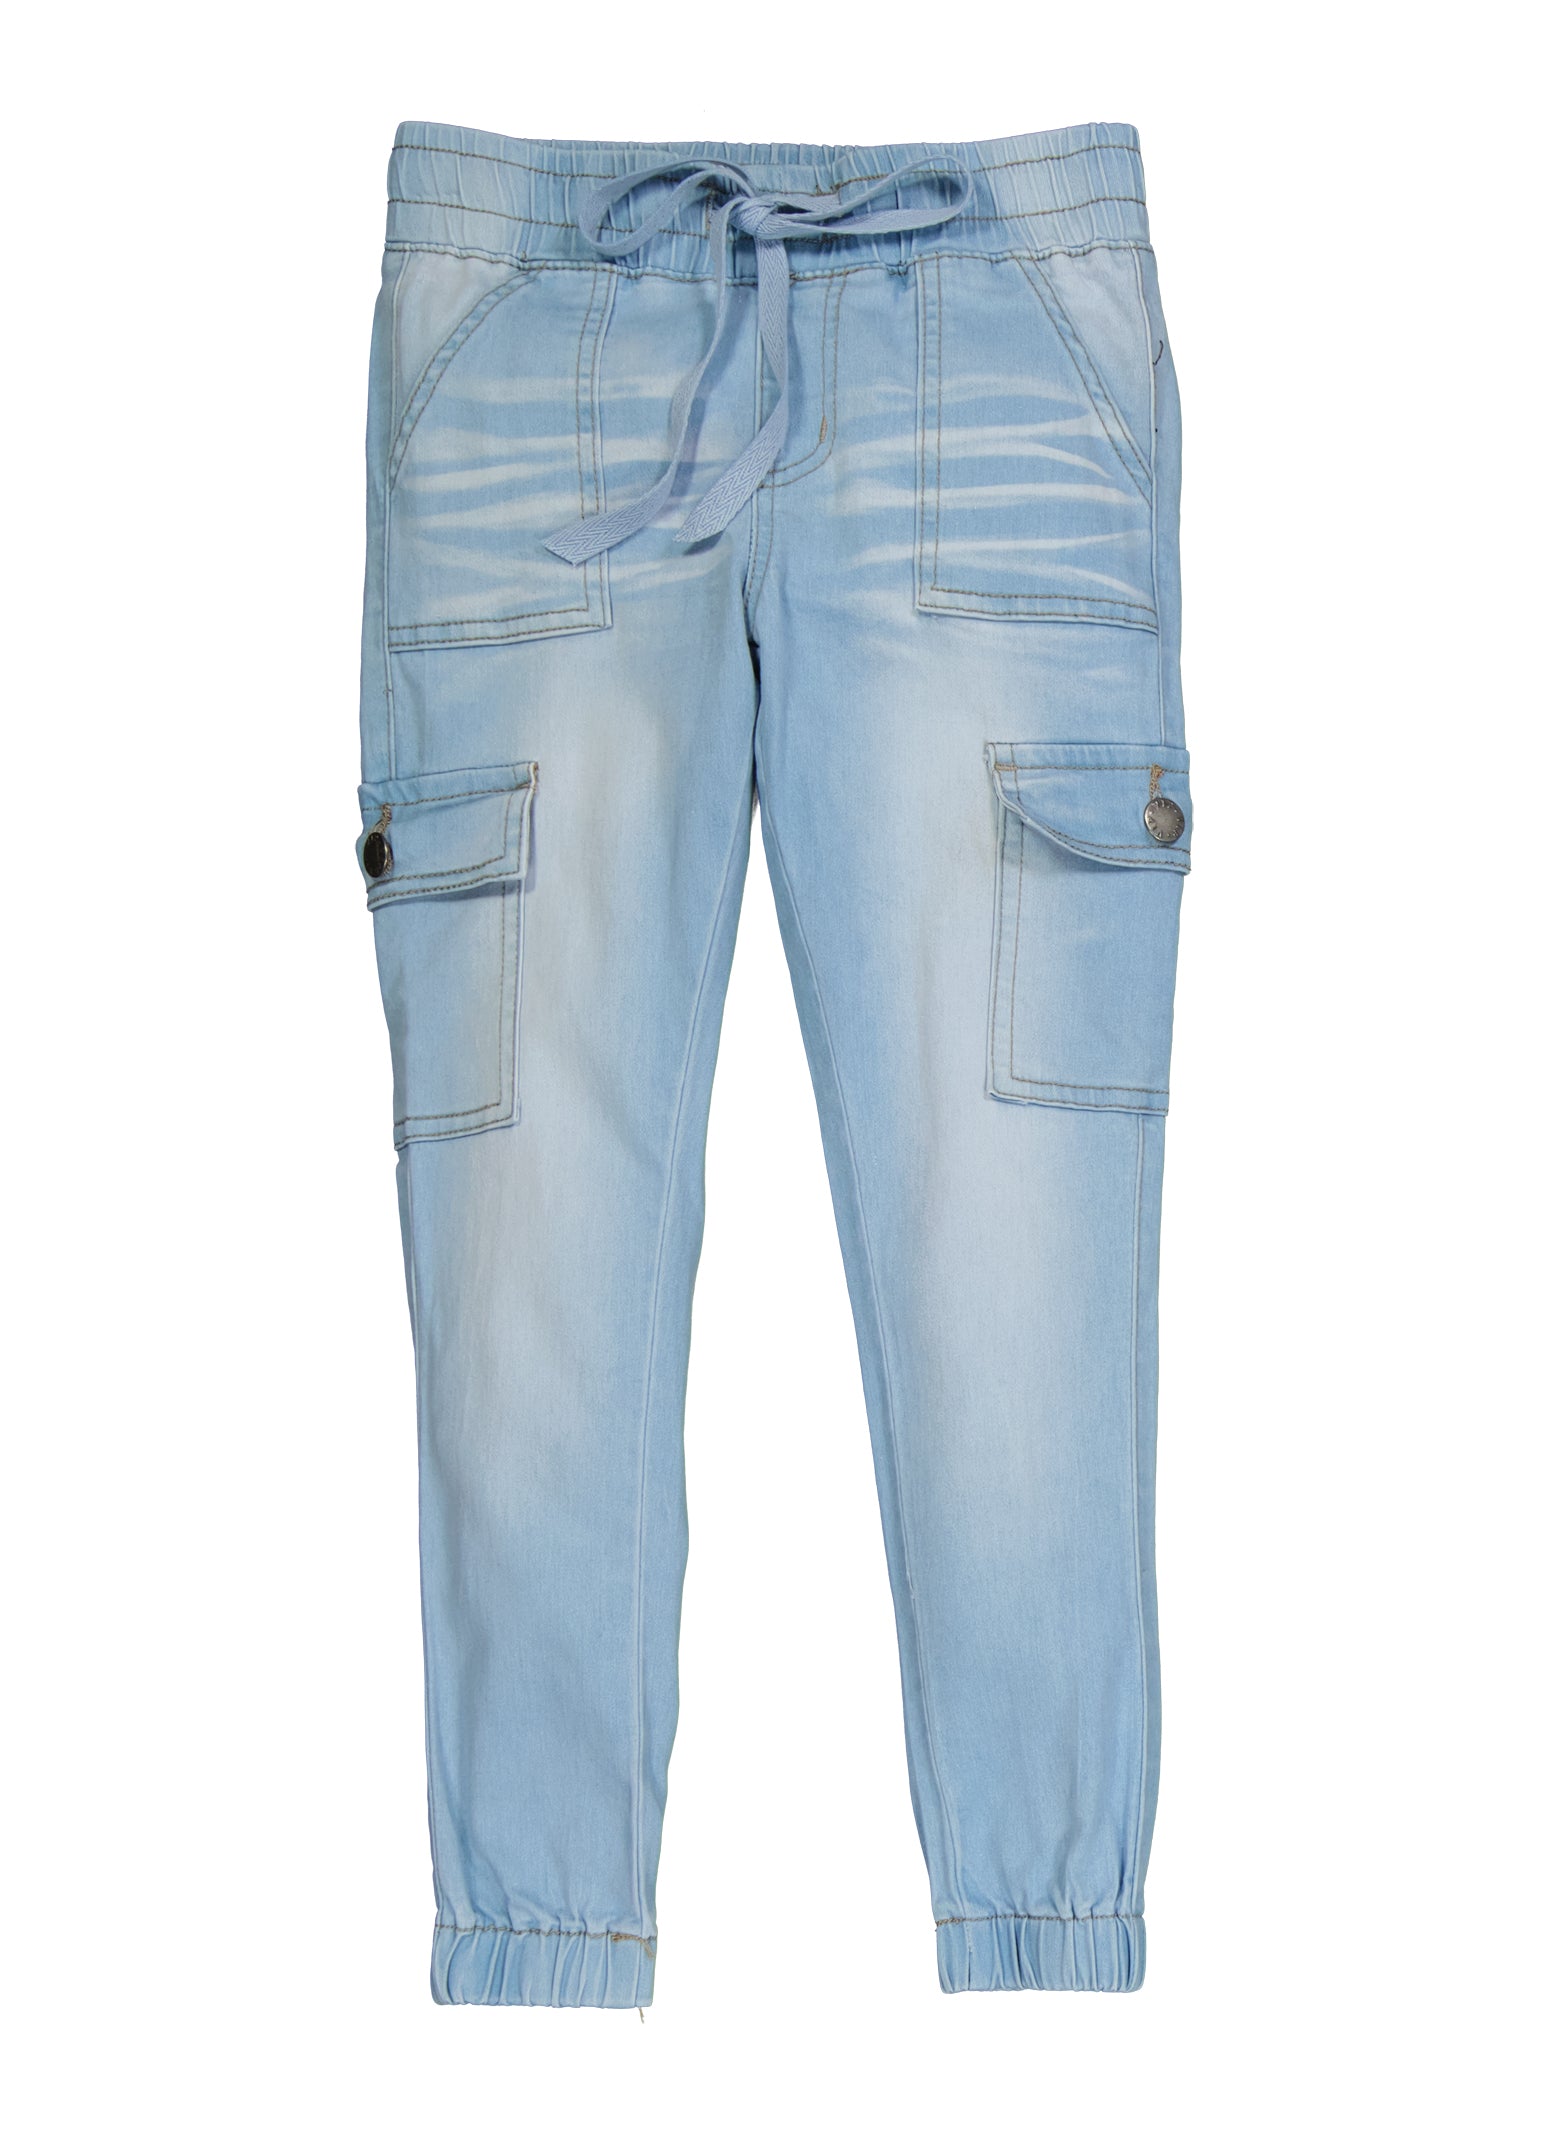 Denim cargo trousers - Light denim blue - Ladies